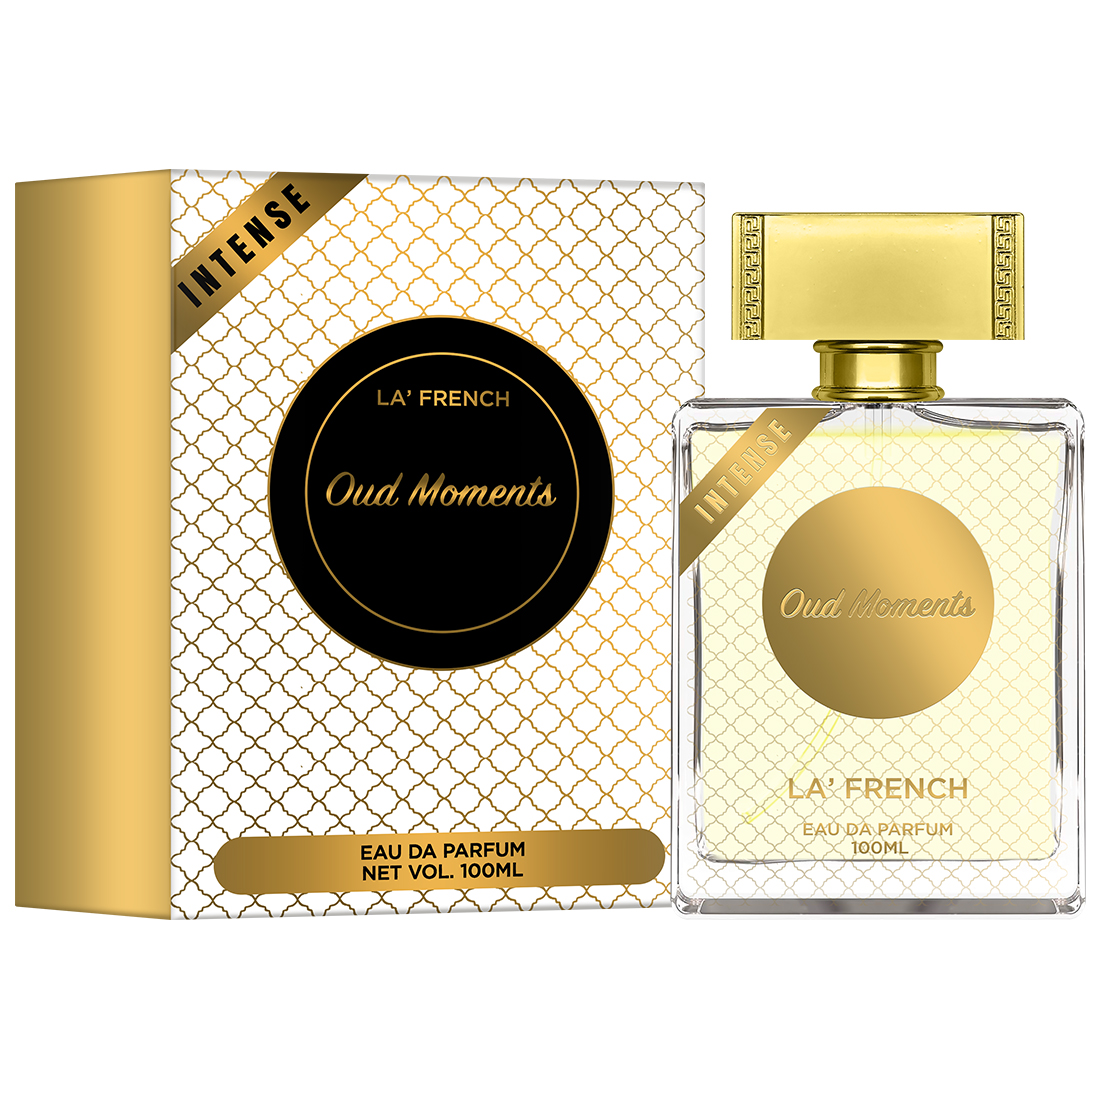 La’ French Oud Moments Eau de Parfum